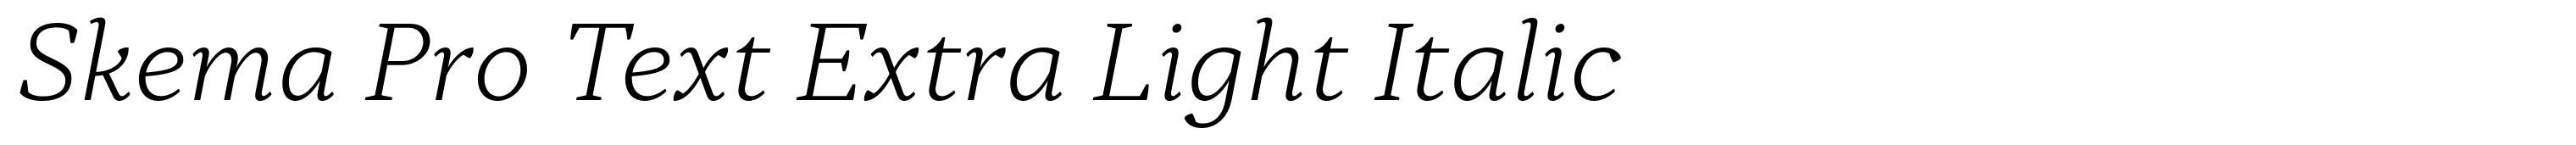 Skema Pro Text Extra Light Italic